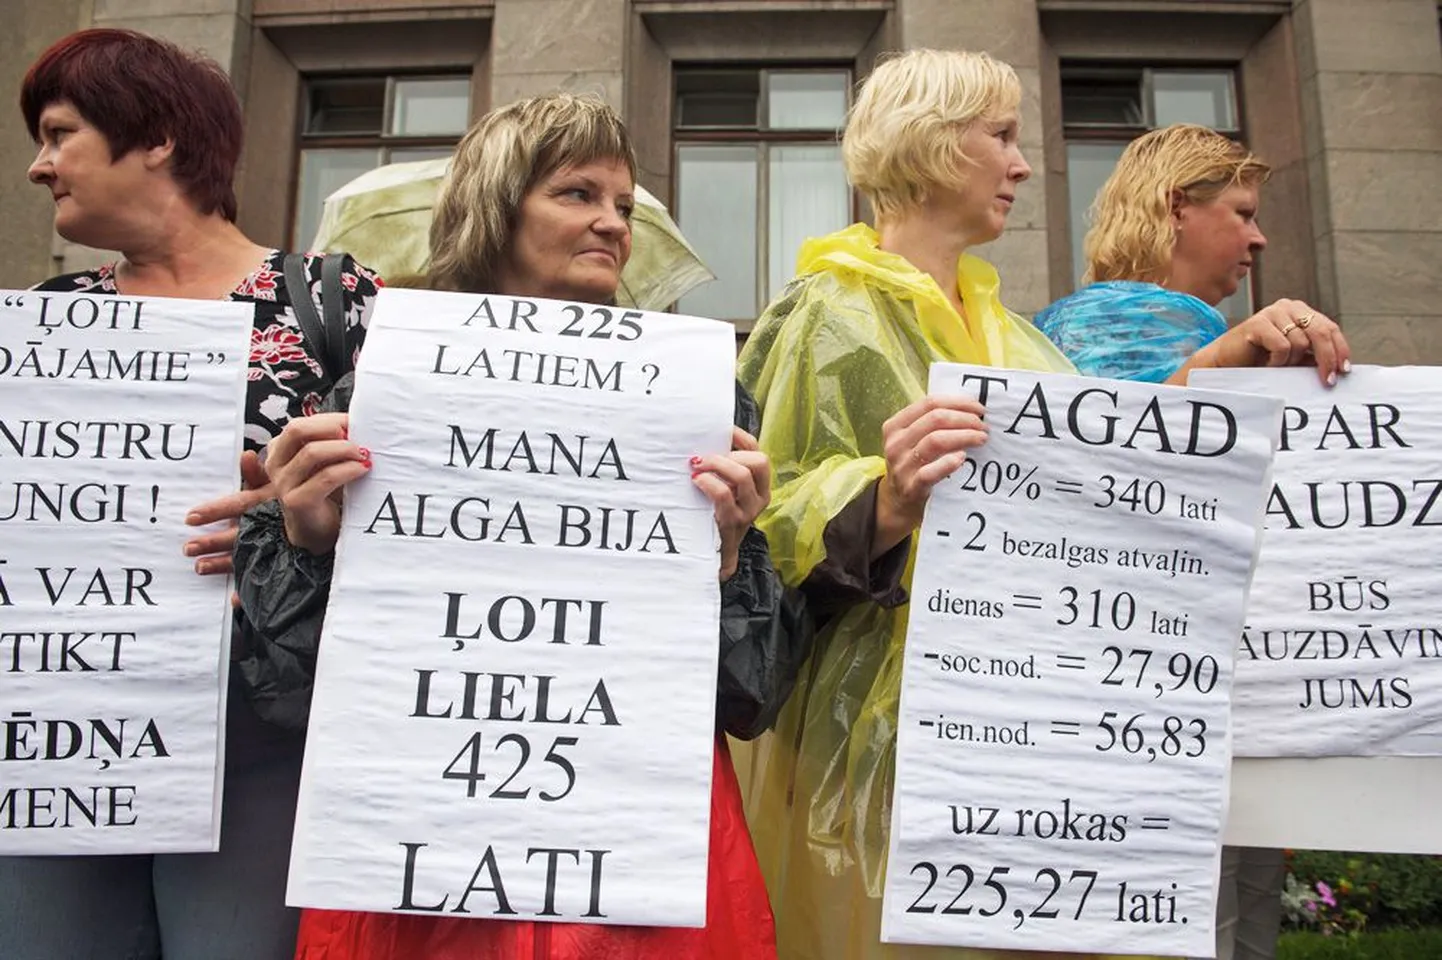 Lätis on kulusid juba igati kokku tõmmatud. Pildil protestivad kriisist räsitud naised 24. juulil Riias palgakärbete vastu.